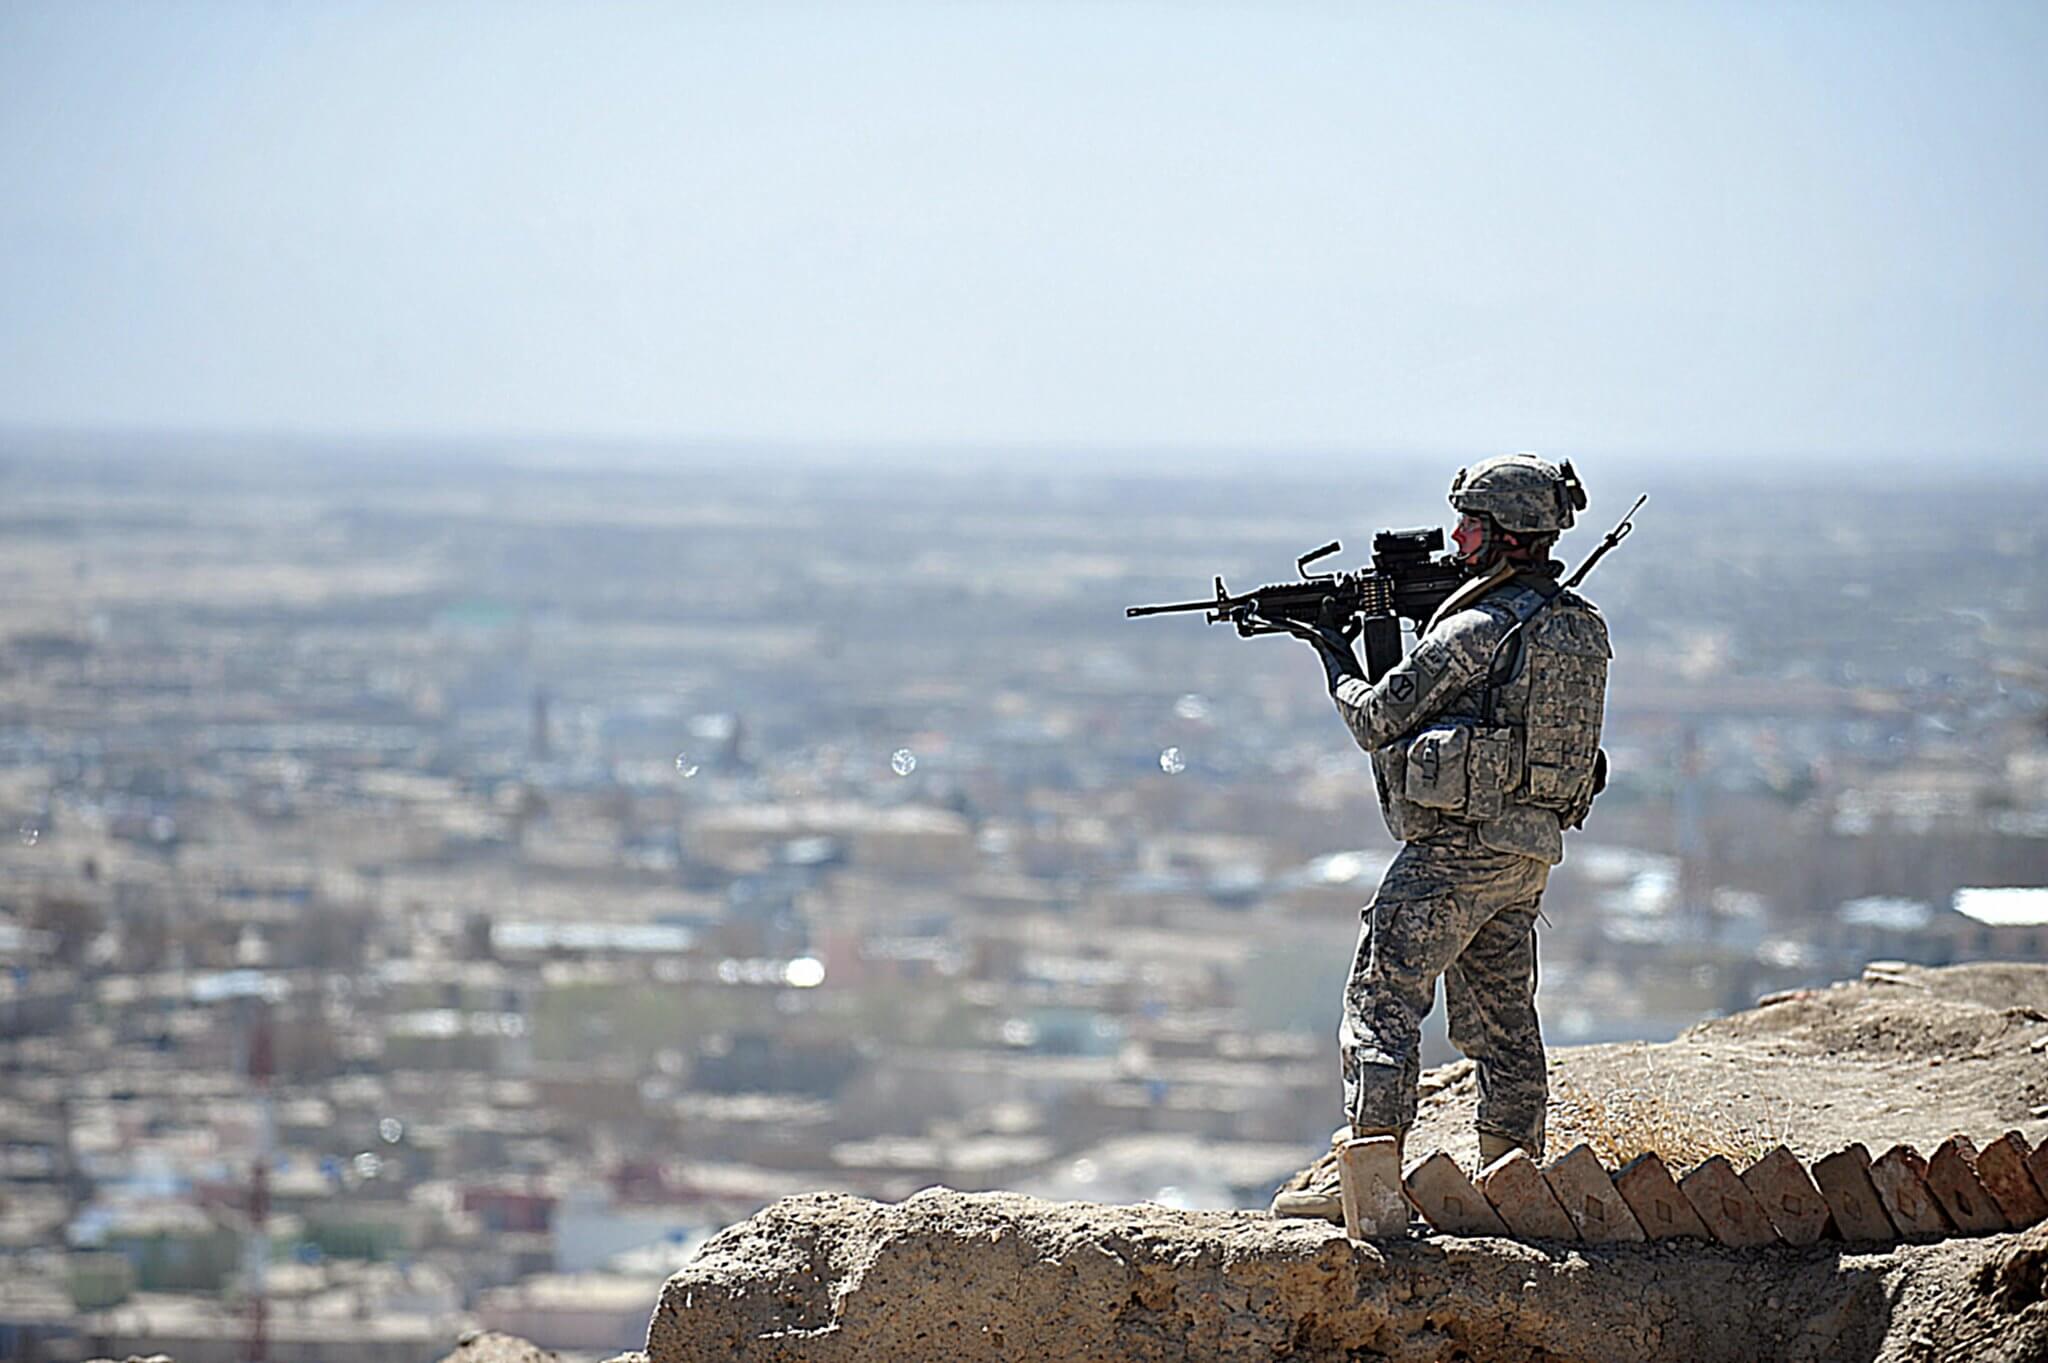 American military personnel in Afghanistan in 2011. © DVIDSHUB / Flickr